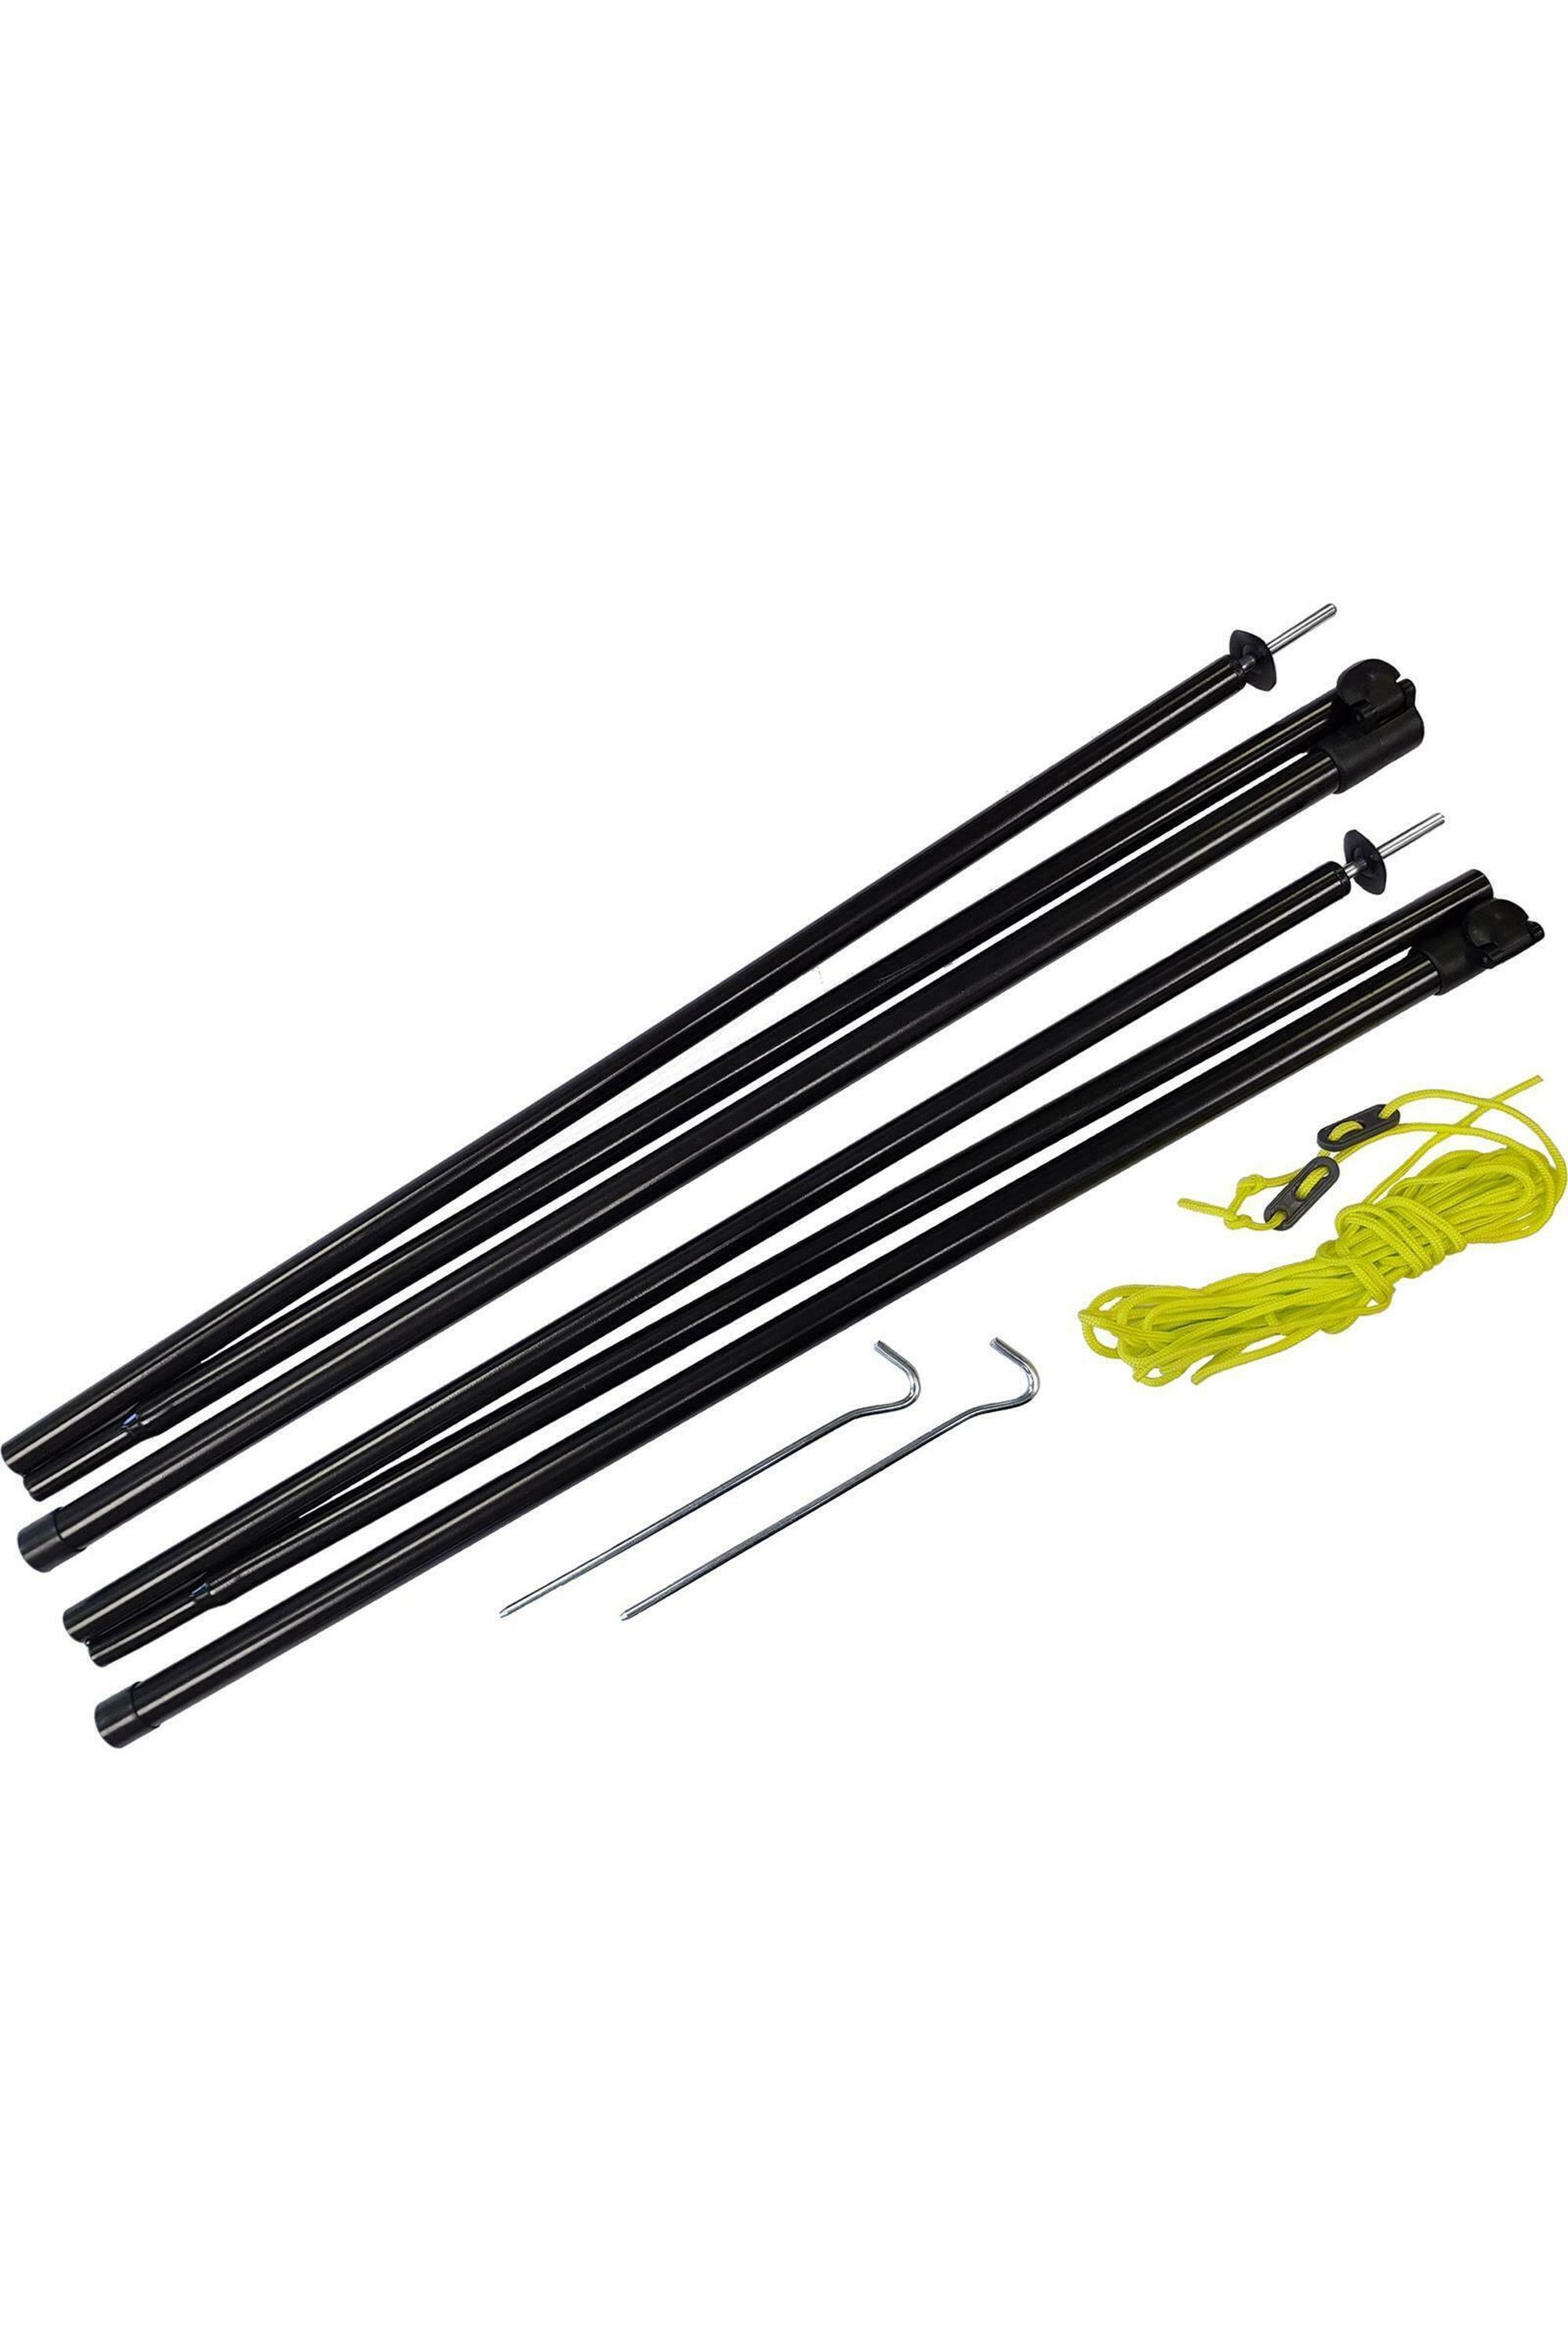 Adjustable Steel King Poles 180-220cm -